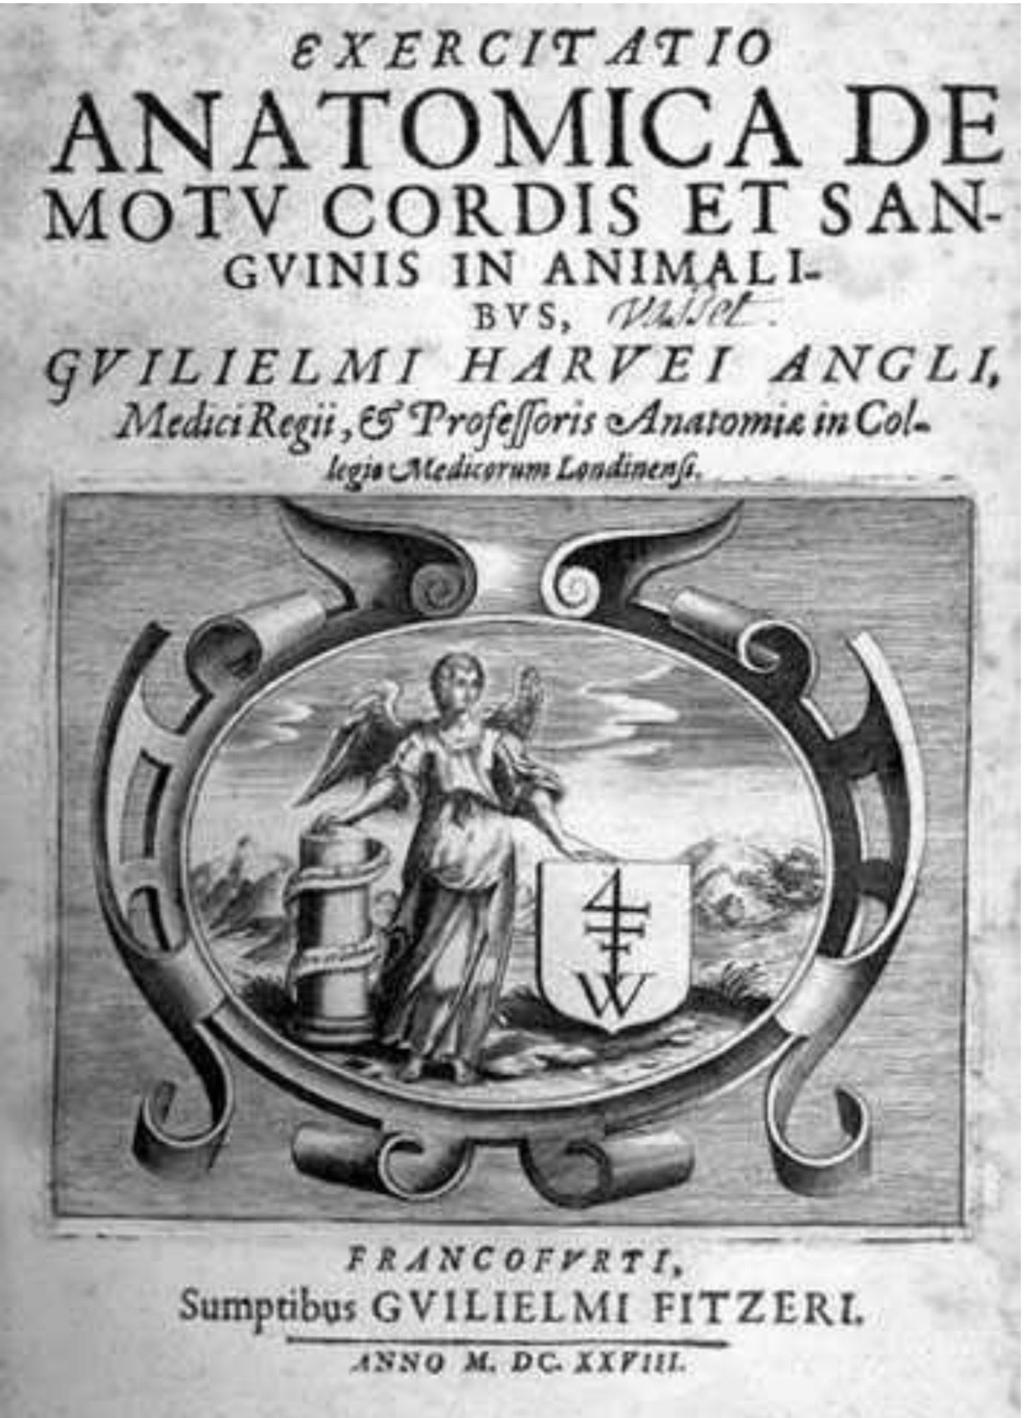 DEPOZYTY CYFROWE Z PRYWATNYCH KOLEKCJI 363 Ryc. 4. Harvey, William (1628). Exercitatio anatomica de motv cordis et sangvinis in animalibvs.